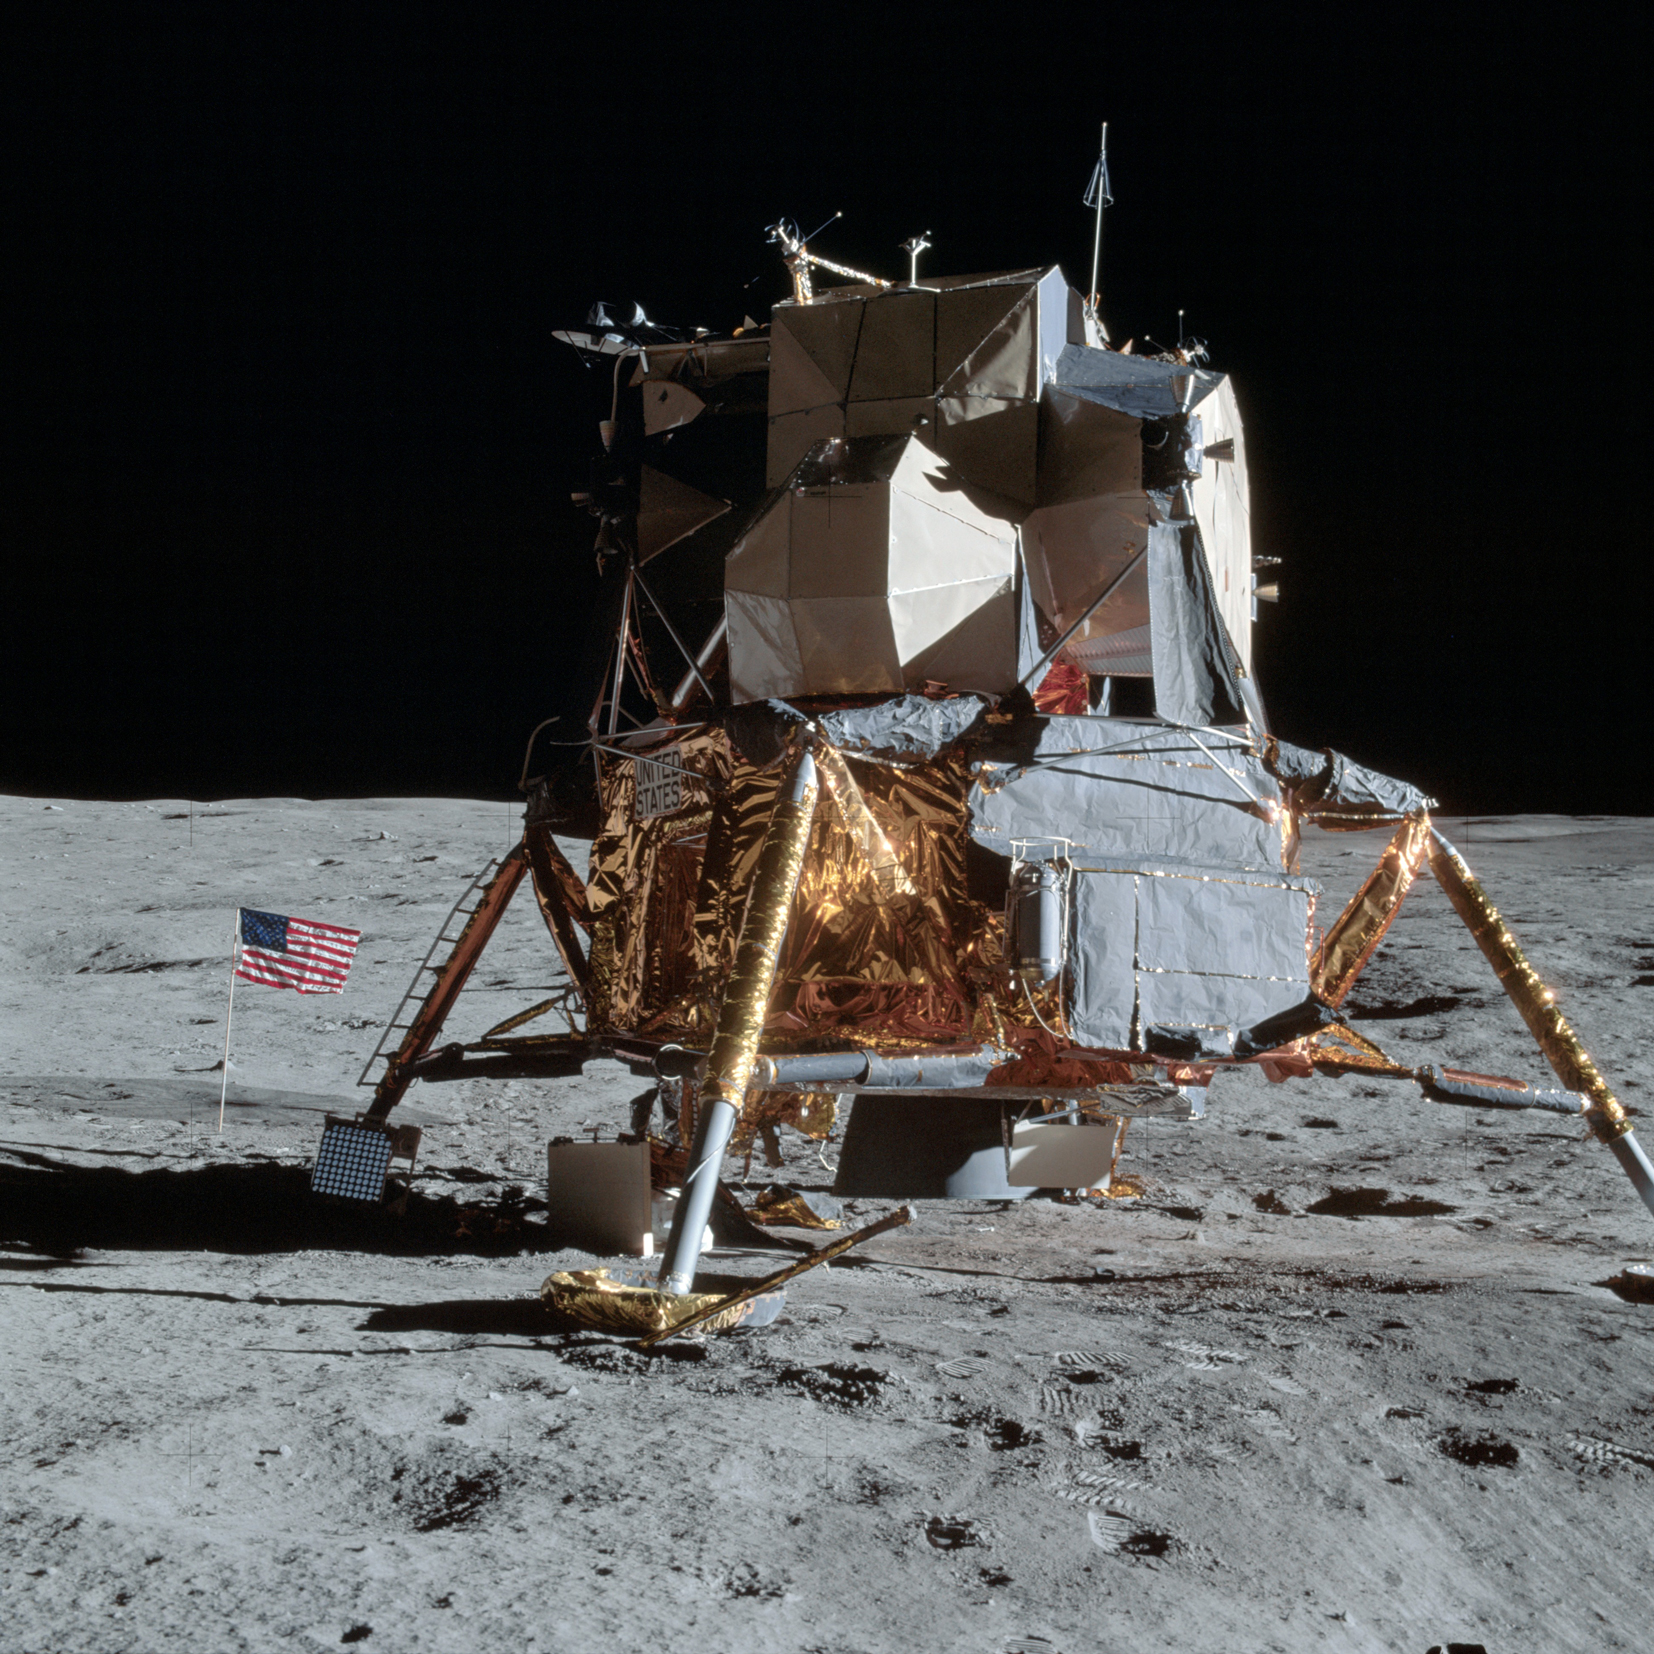 name of apollo 11 lunar lander